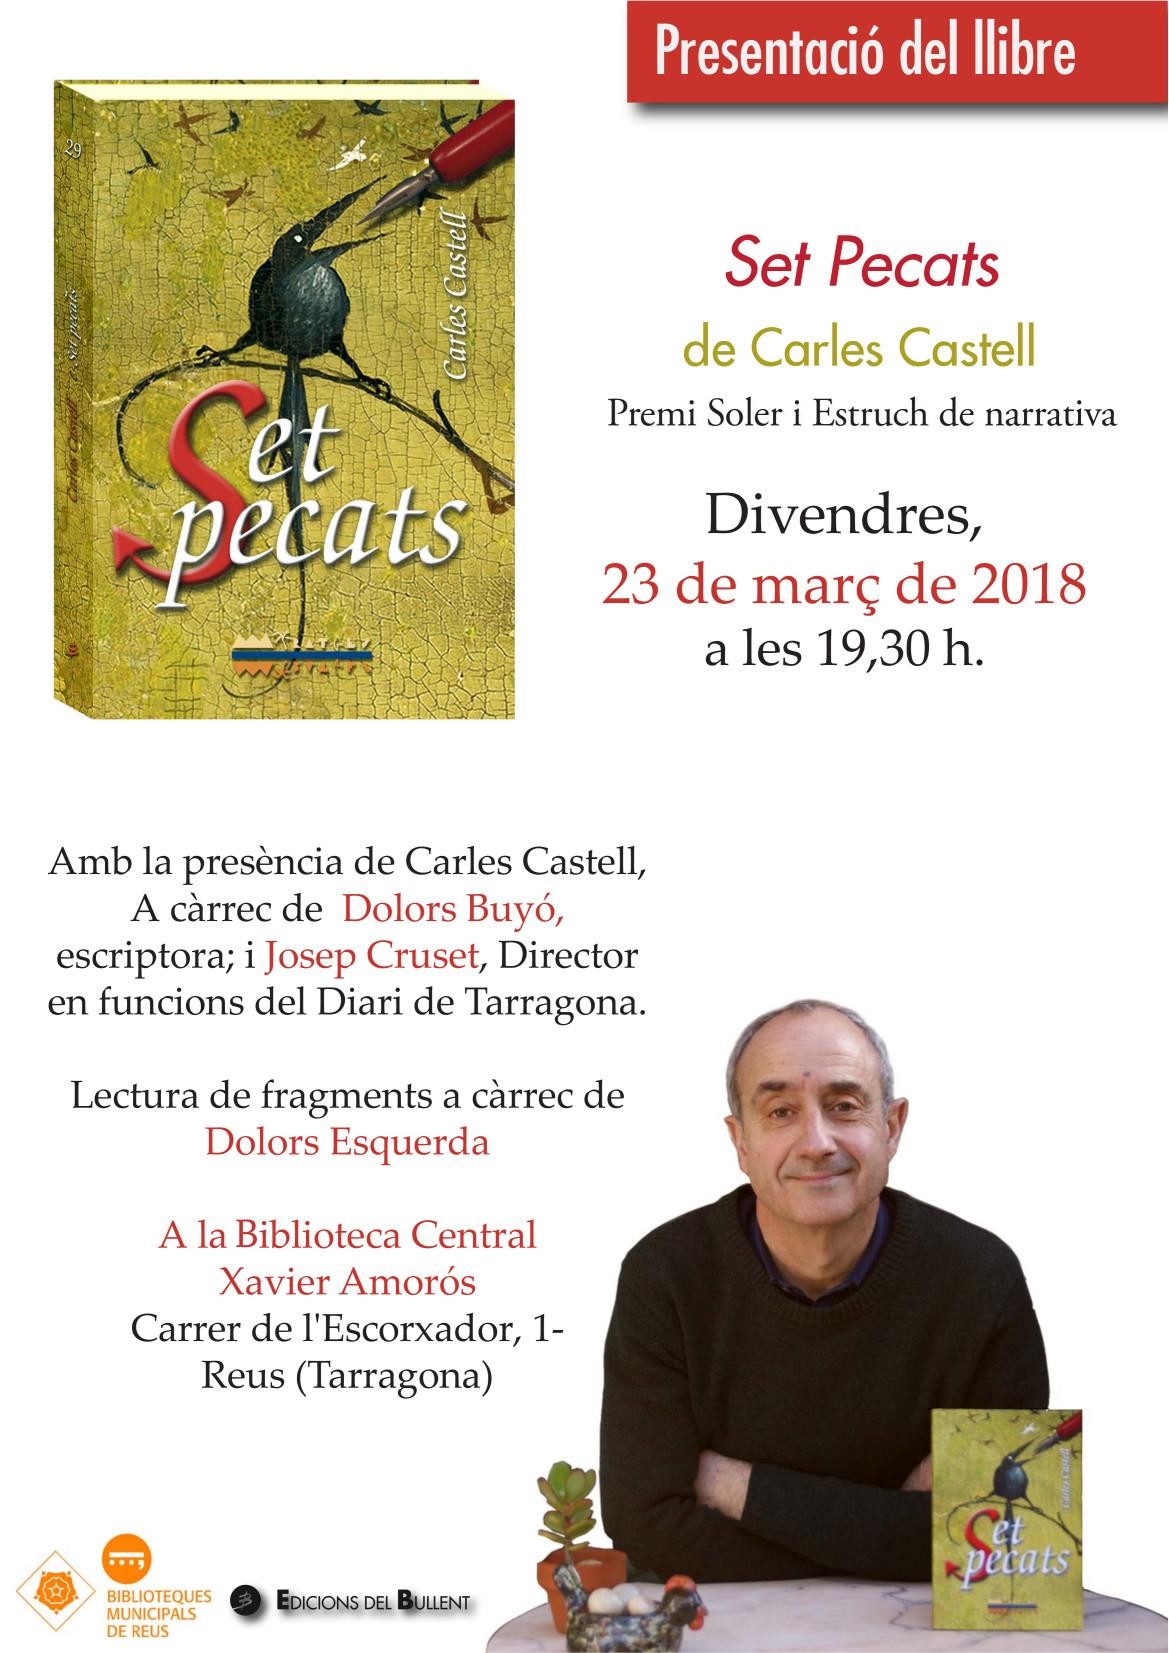 Presentació del llibre de Carles Castell Puig 